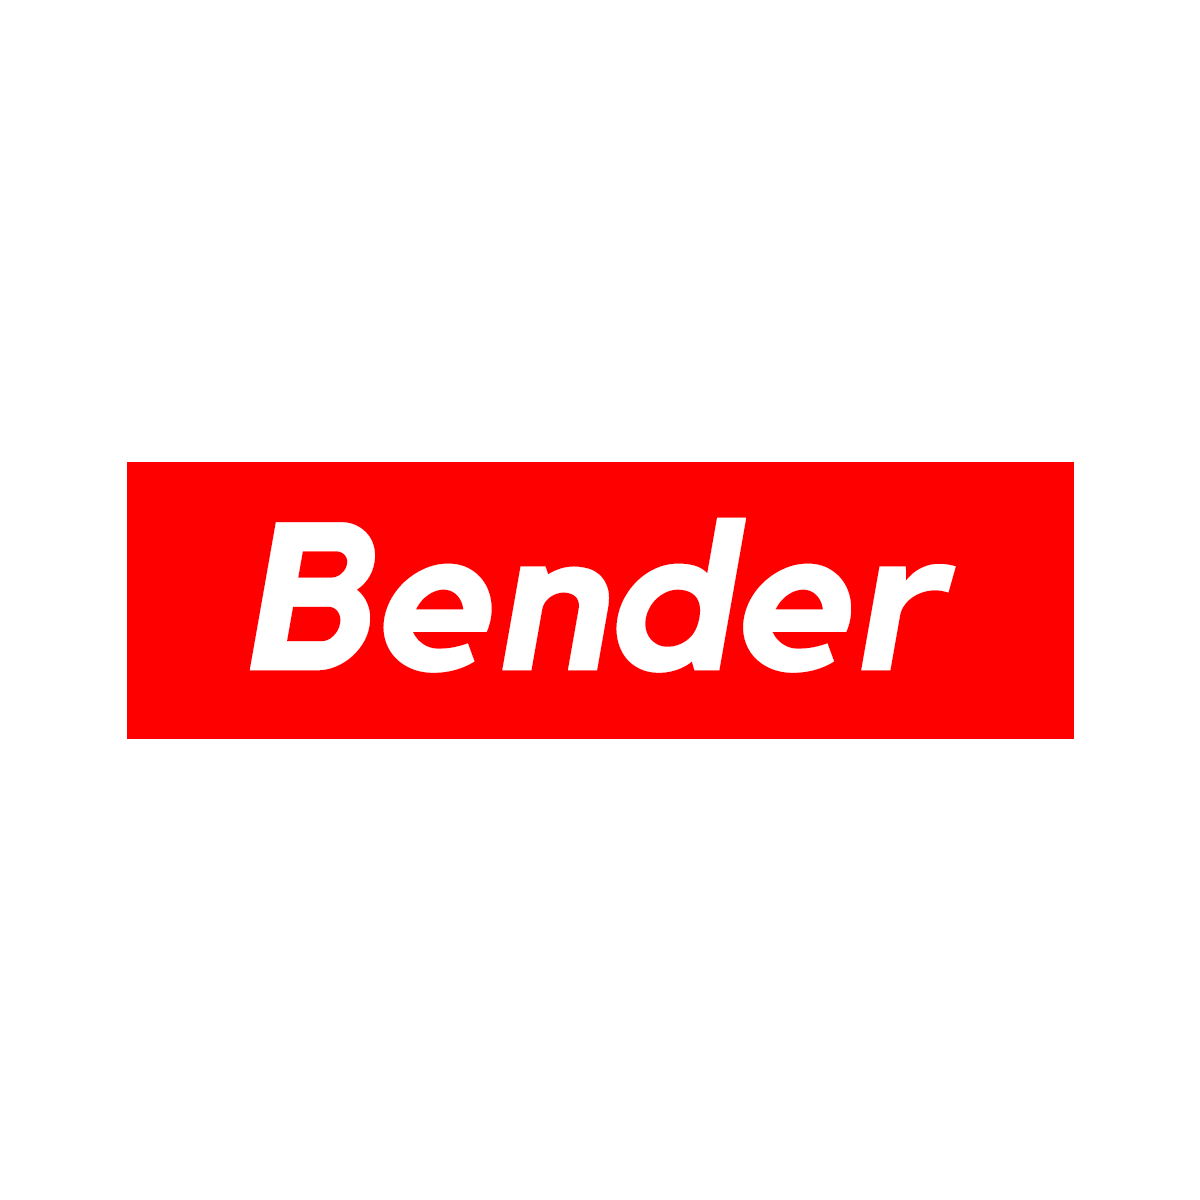 Bender Logo - Box Logo Collection